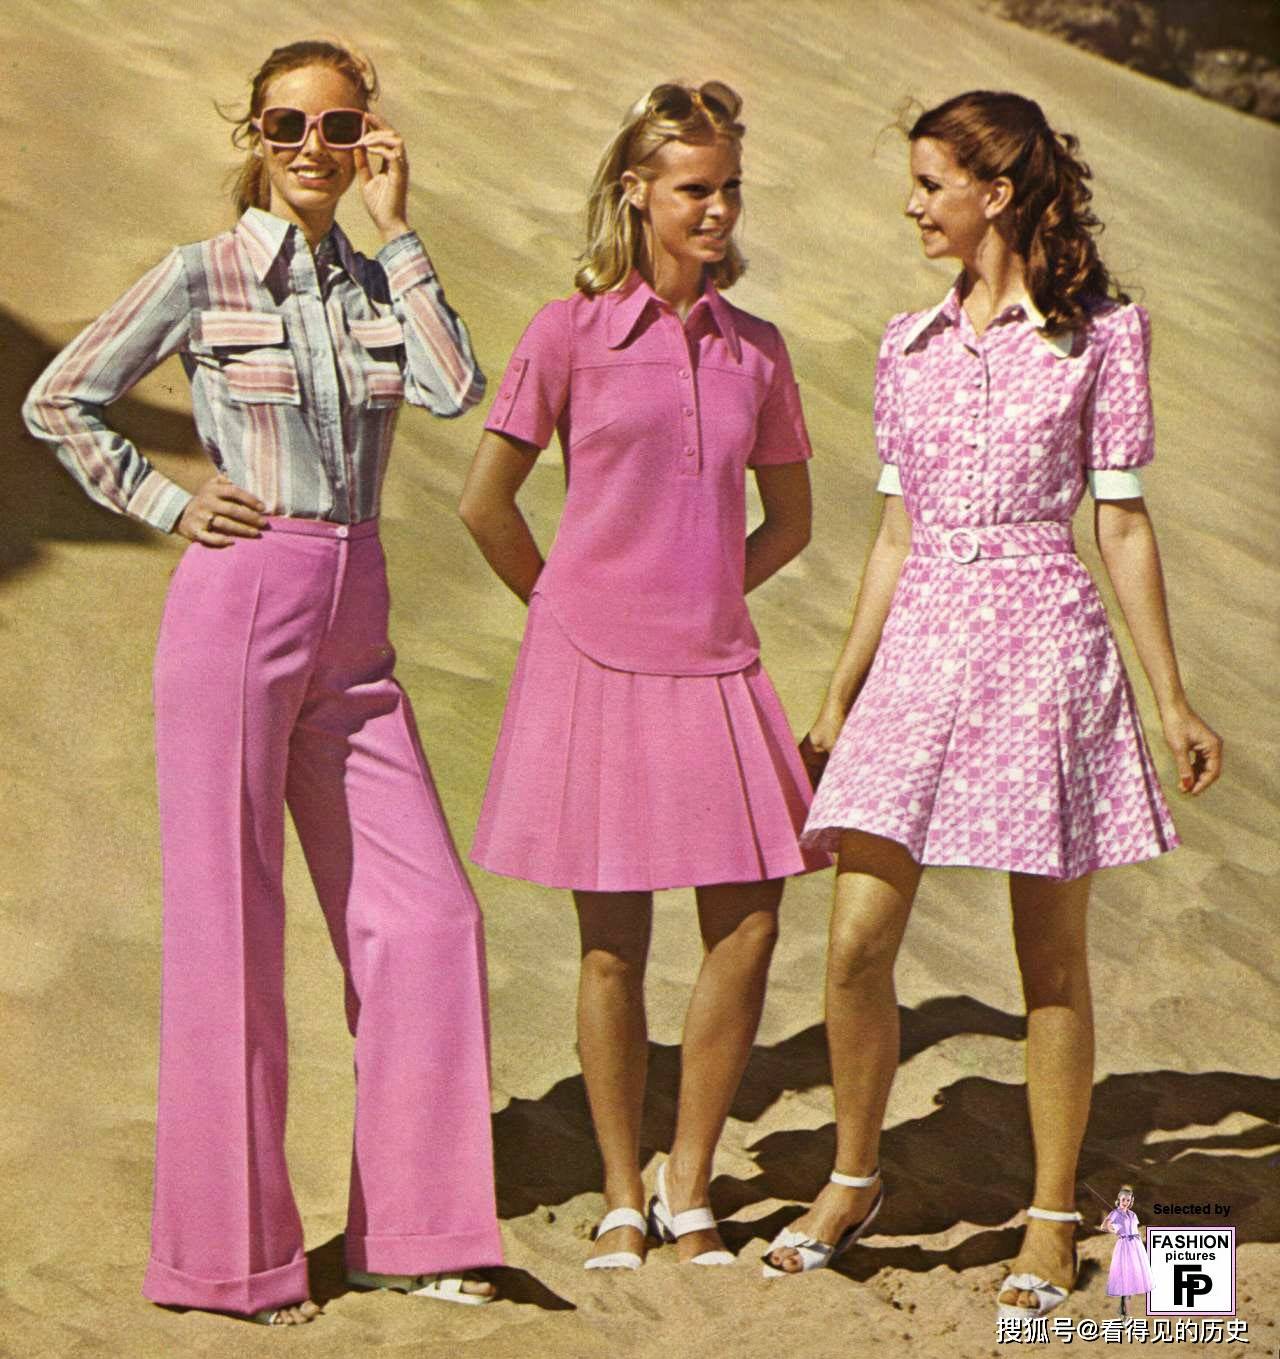 老照片70年代的时装模特看看那时候的时尚